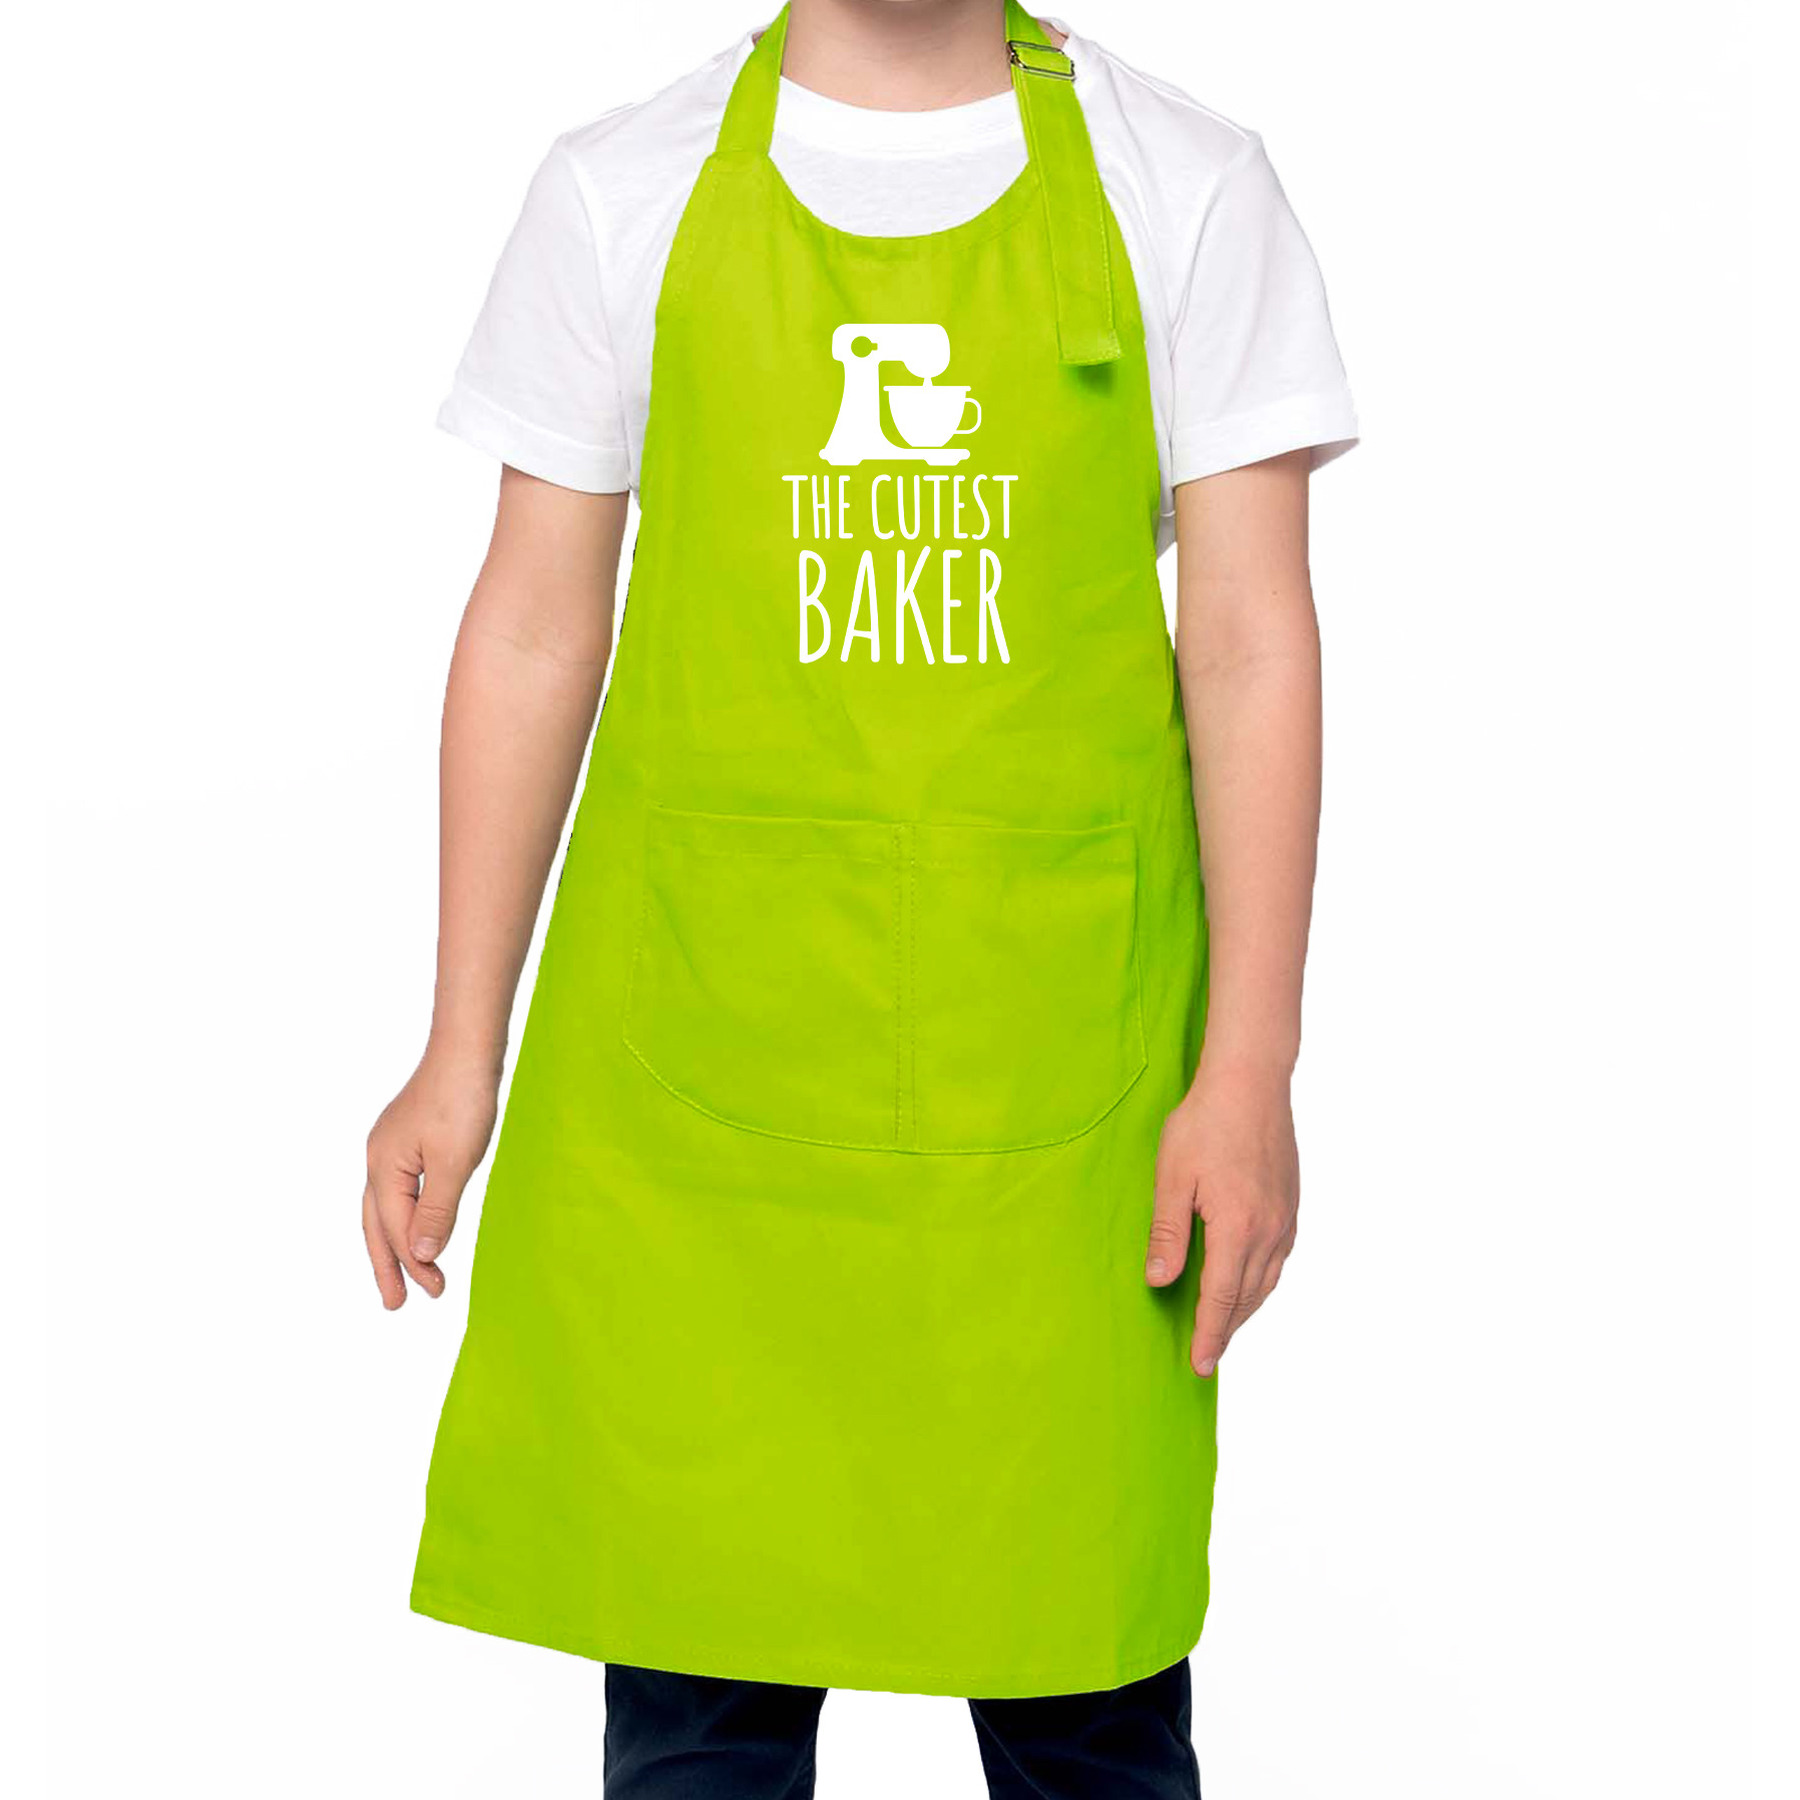 The cutest baker keukenschort/ kinder bakschort groen voor jongens en meisjes - Bakken met kinderen